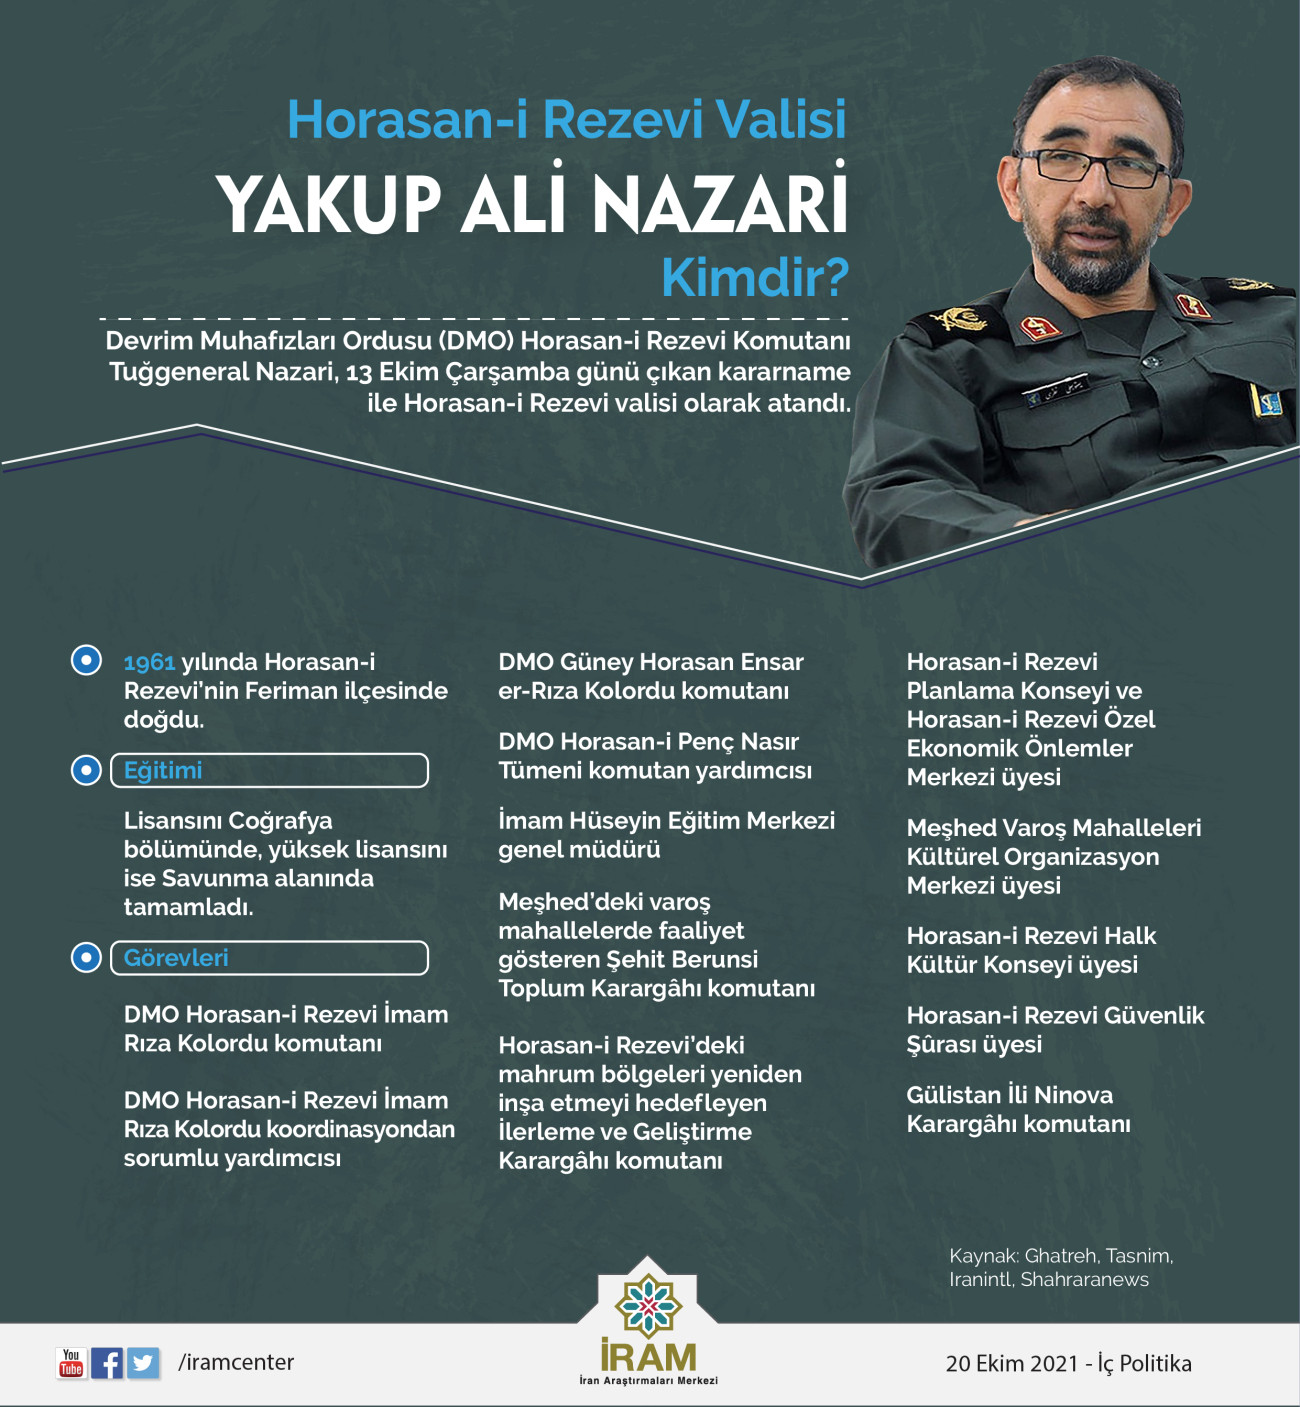 Yakup Ali Nazari Kimdir?